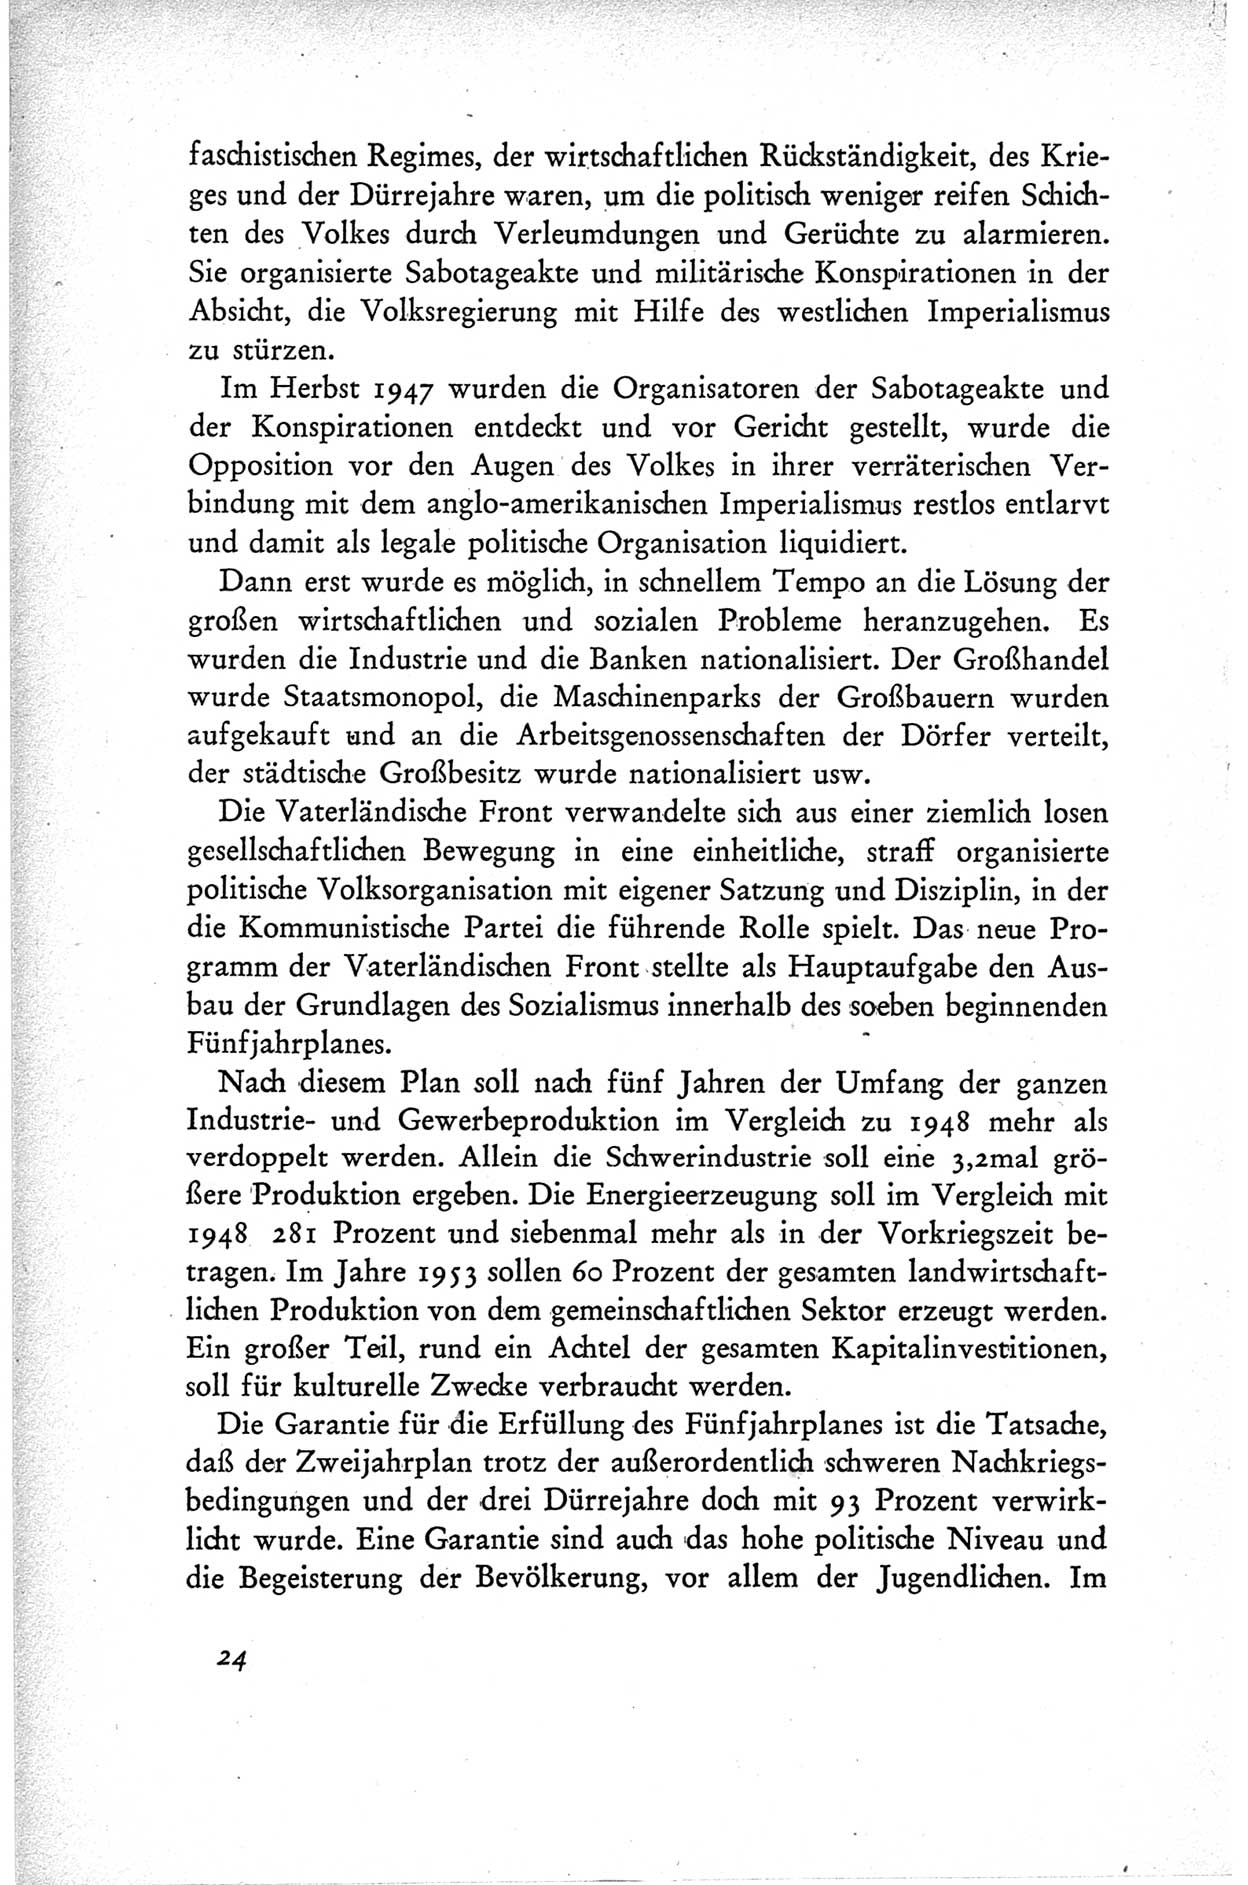 Protokoll der ersten Parteikonferenz der Sozialistischen Einheitspartei Deutschlands (SED) [Sowjetische Besatzungszone (SBZ) Deutschlands] vom 25. bis 28. Januar 1949 im Hause der Deutschen Wirtschaftskommission zu Berlin, Seite 24 (Prot. 1. PK SED SBZ Dtl. 1949, S. 24)